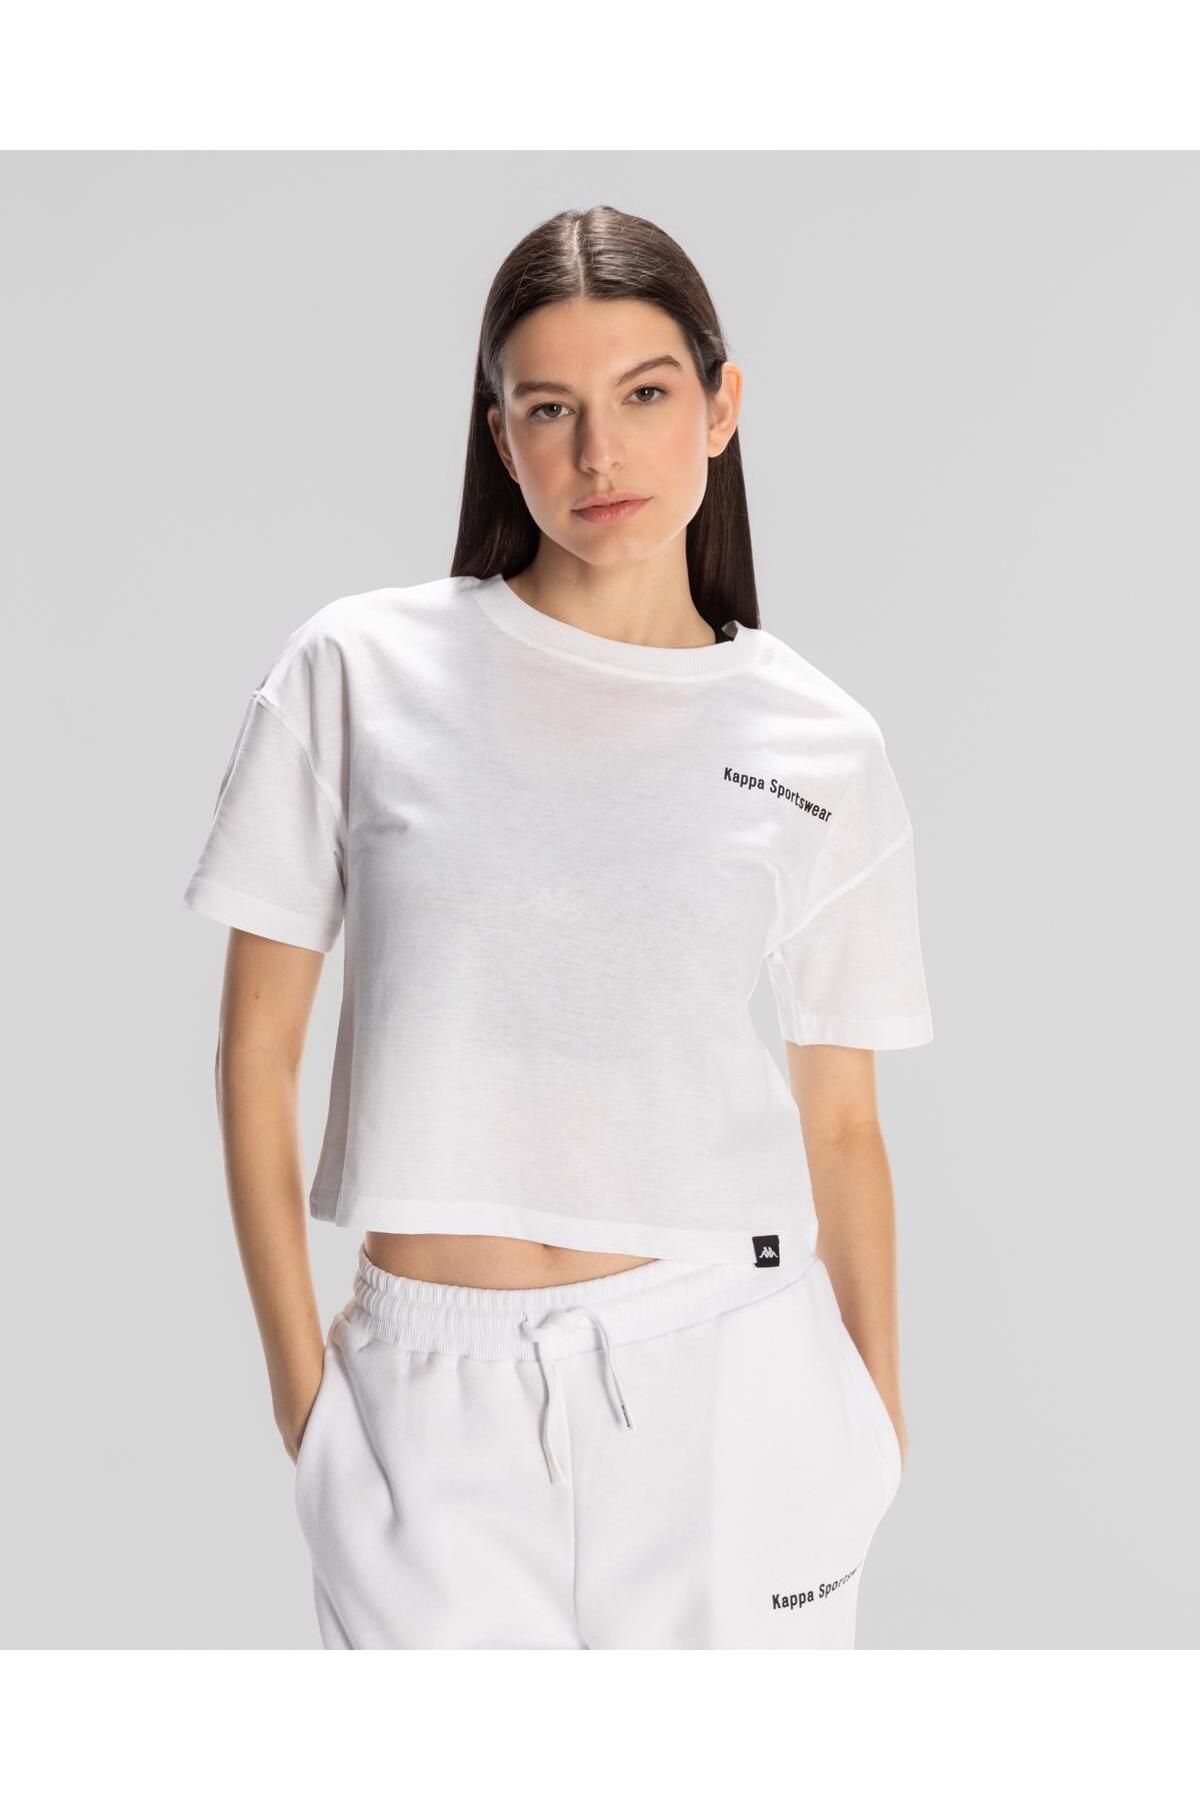 Kappa Authentic Jessa-woman-t-shirt Kadın Beyaz Regular Fit Tişört